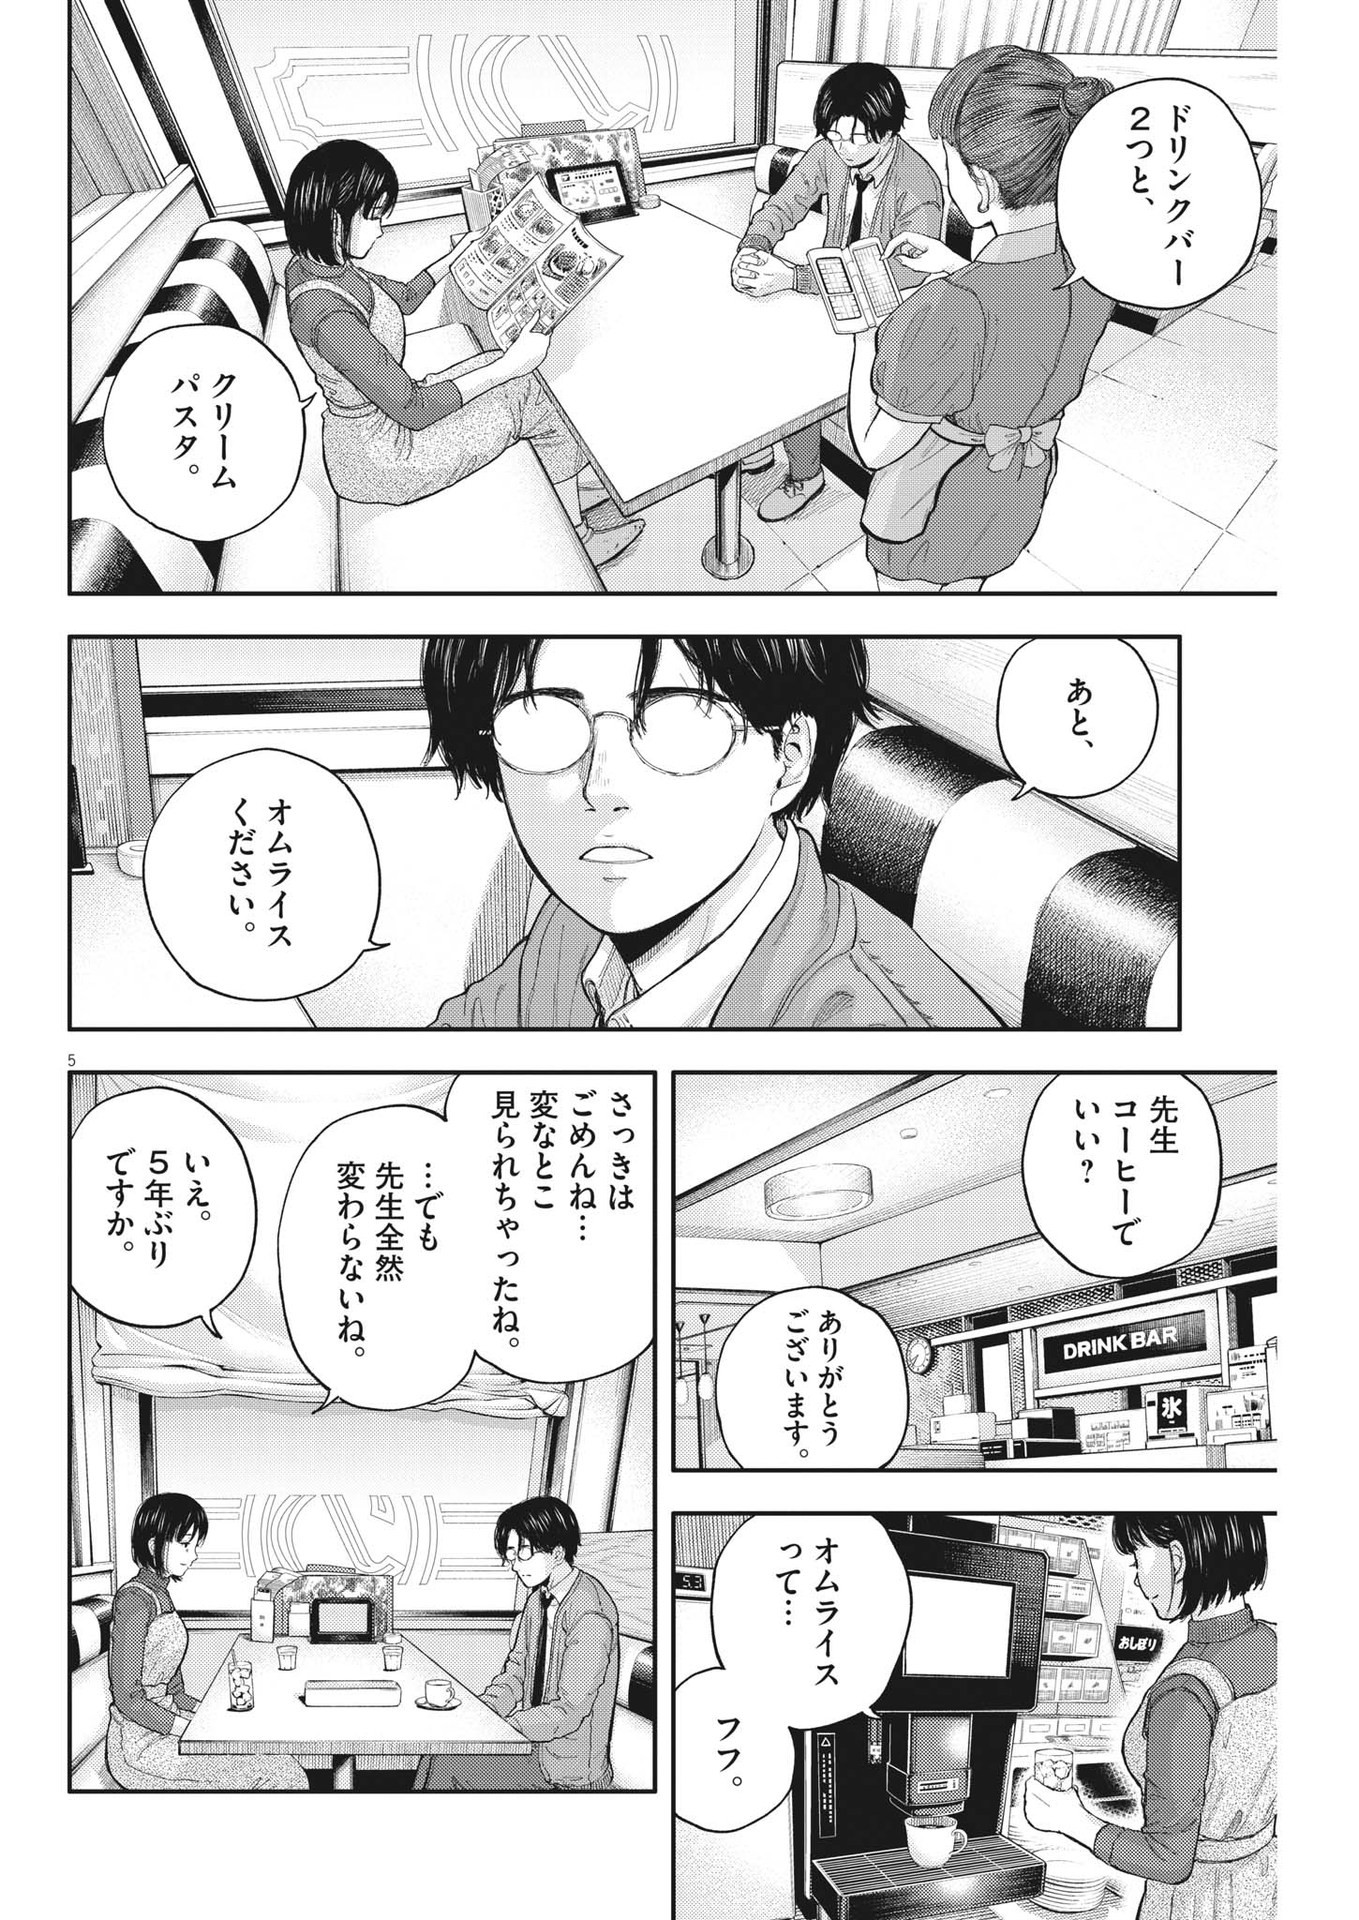 Yumenashi-sensei no Shinroshidou - Chapter 2 - Page 5